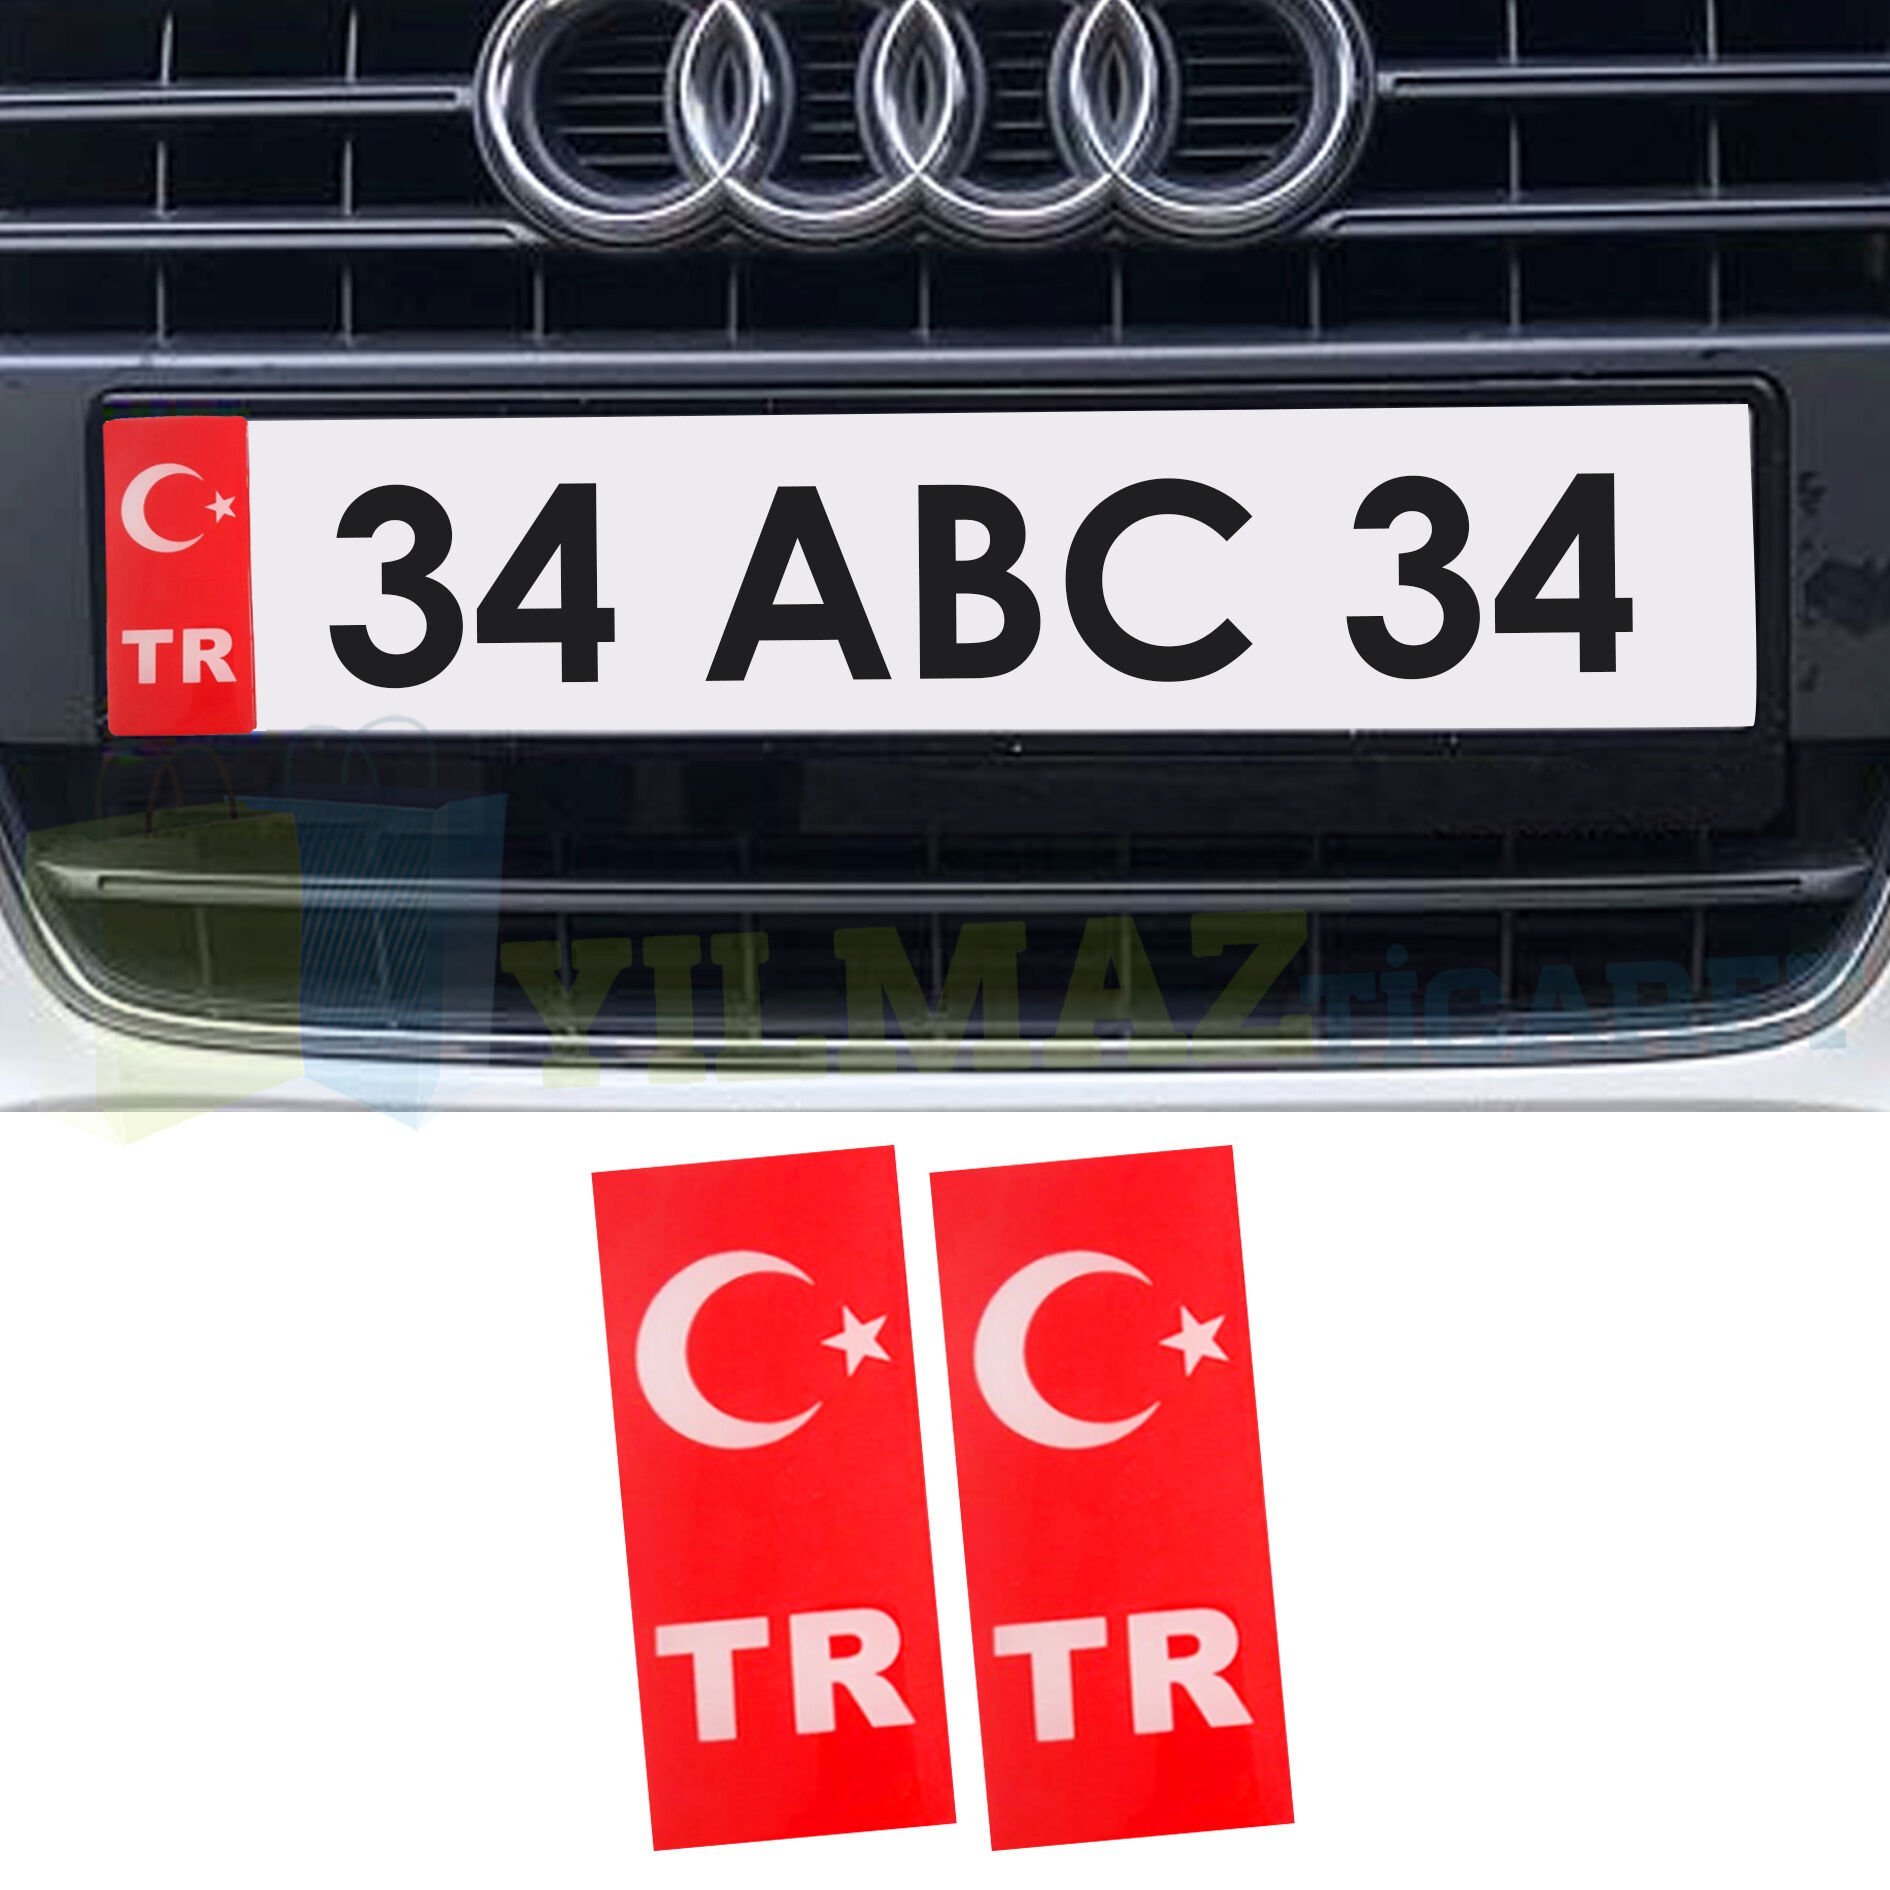 Tr Plaka Türk Bayrağı Damla Sticker Etiket Yapıştırma 1 Çift